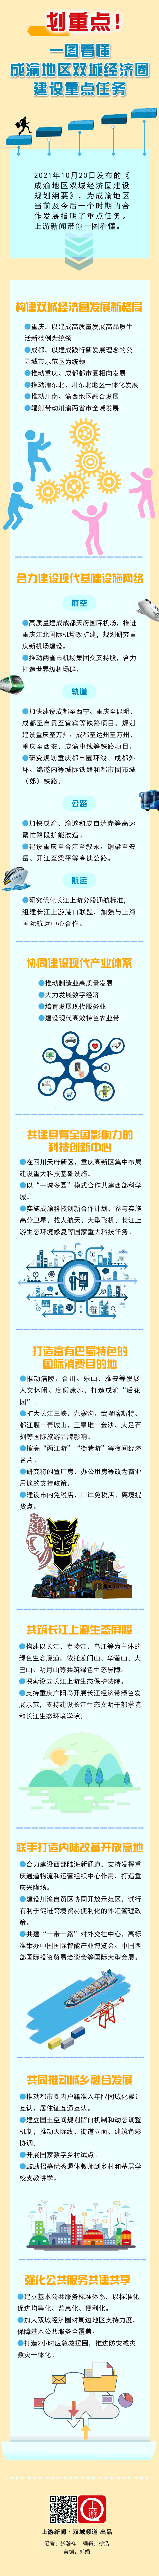 双城一图看懂成渝地区双城经济圈发展重点任务20210913.gif